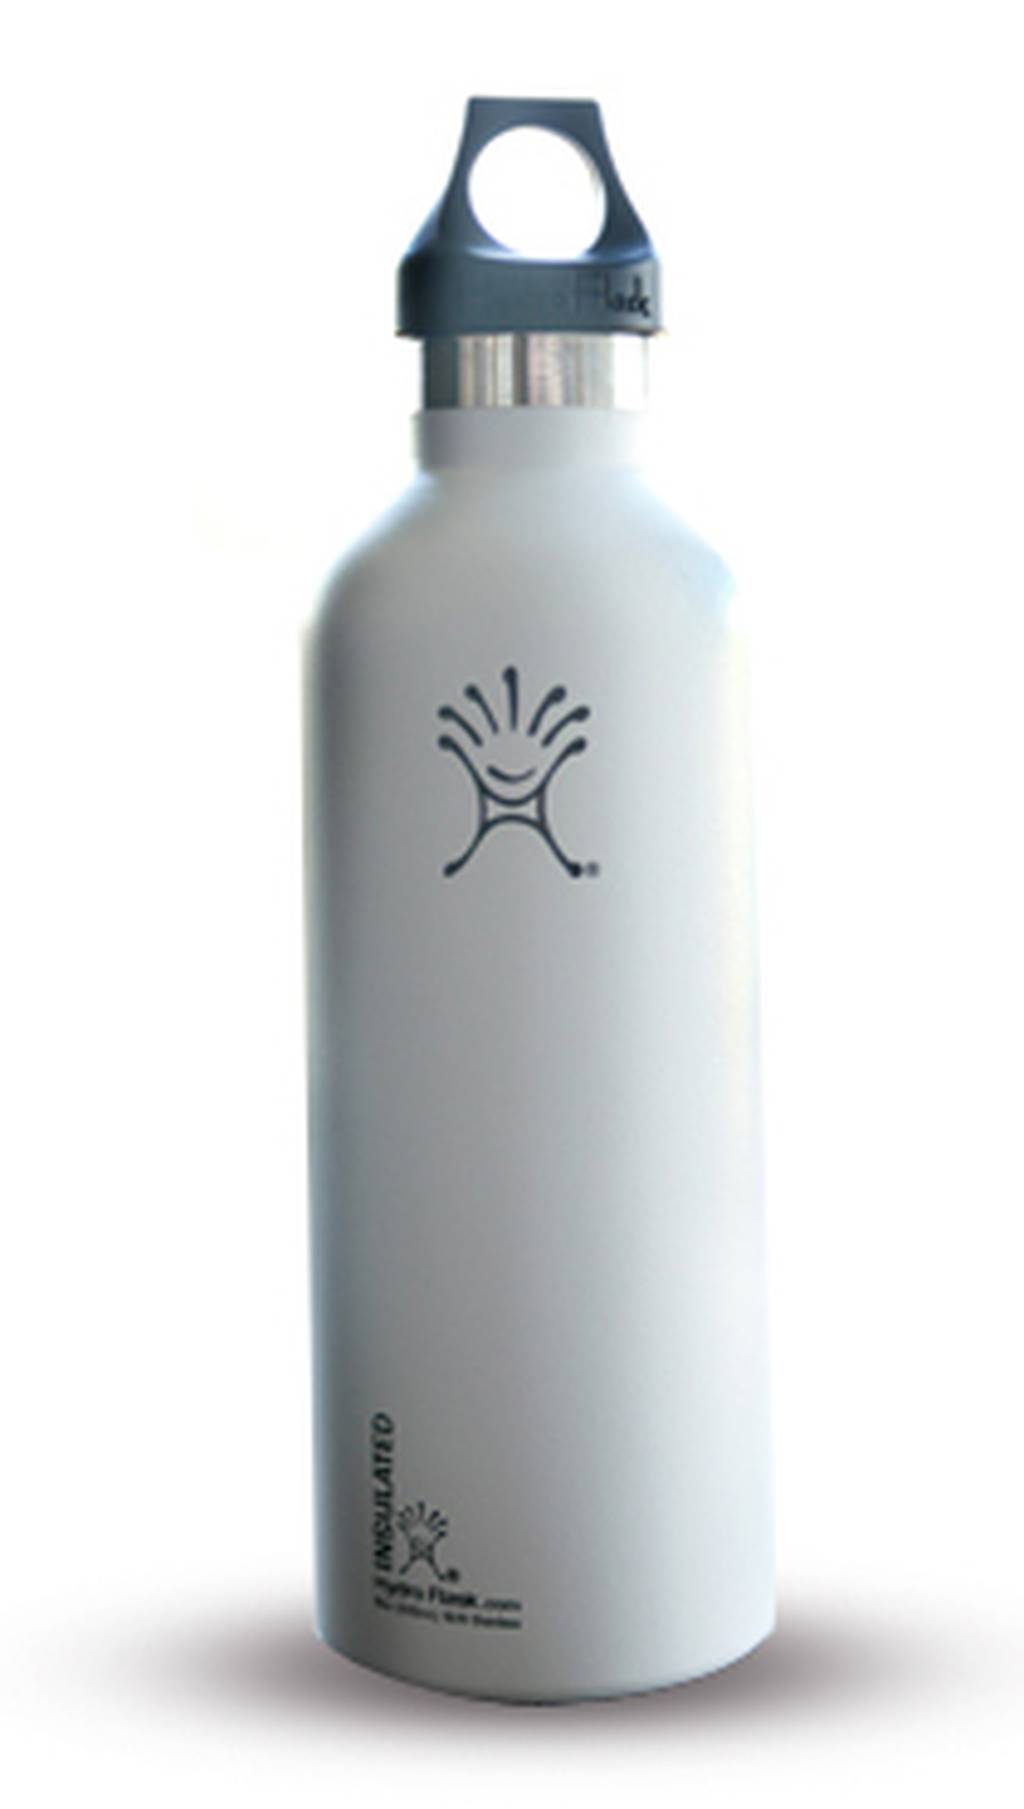 Hydro Flask's no-sweat bottle